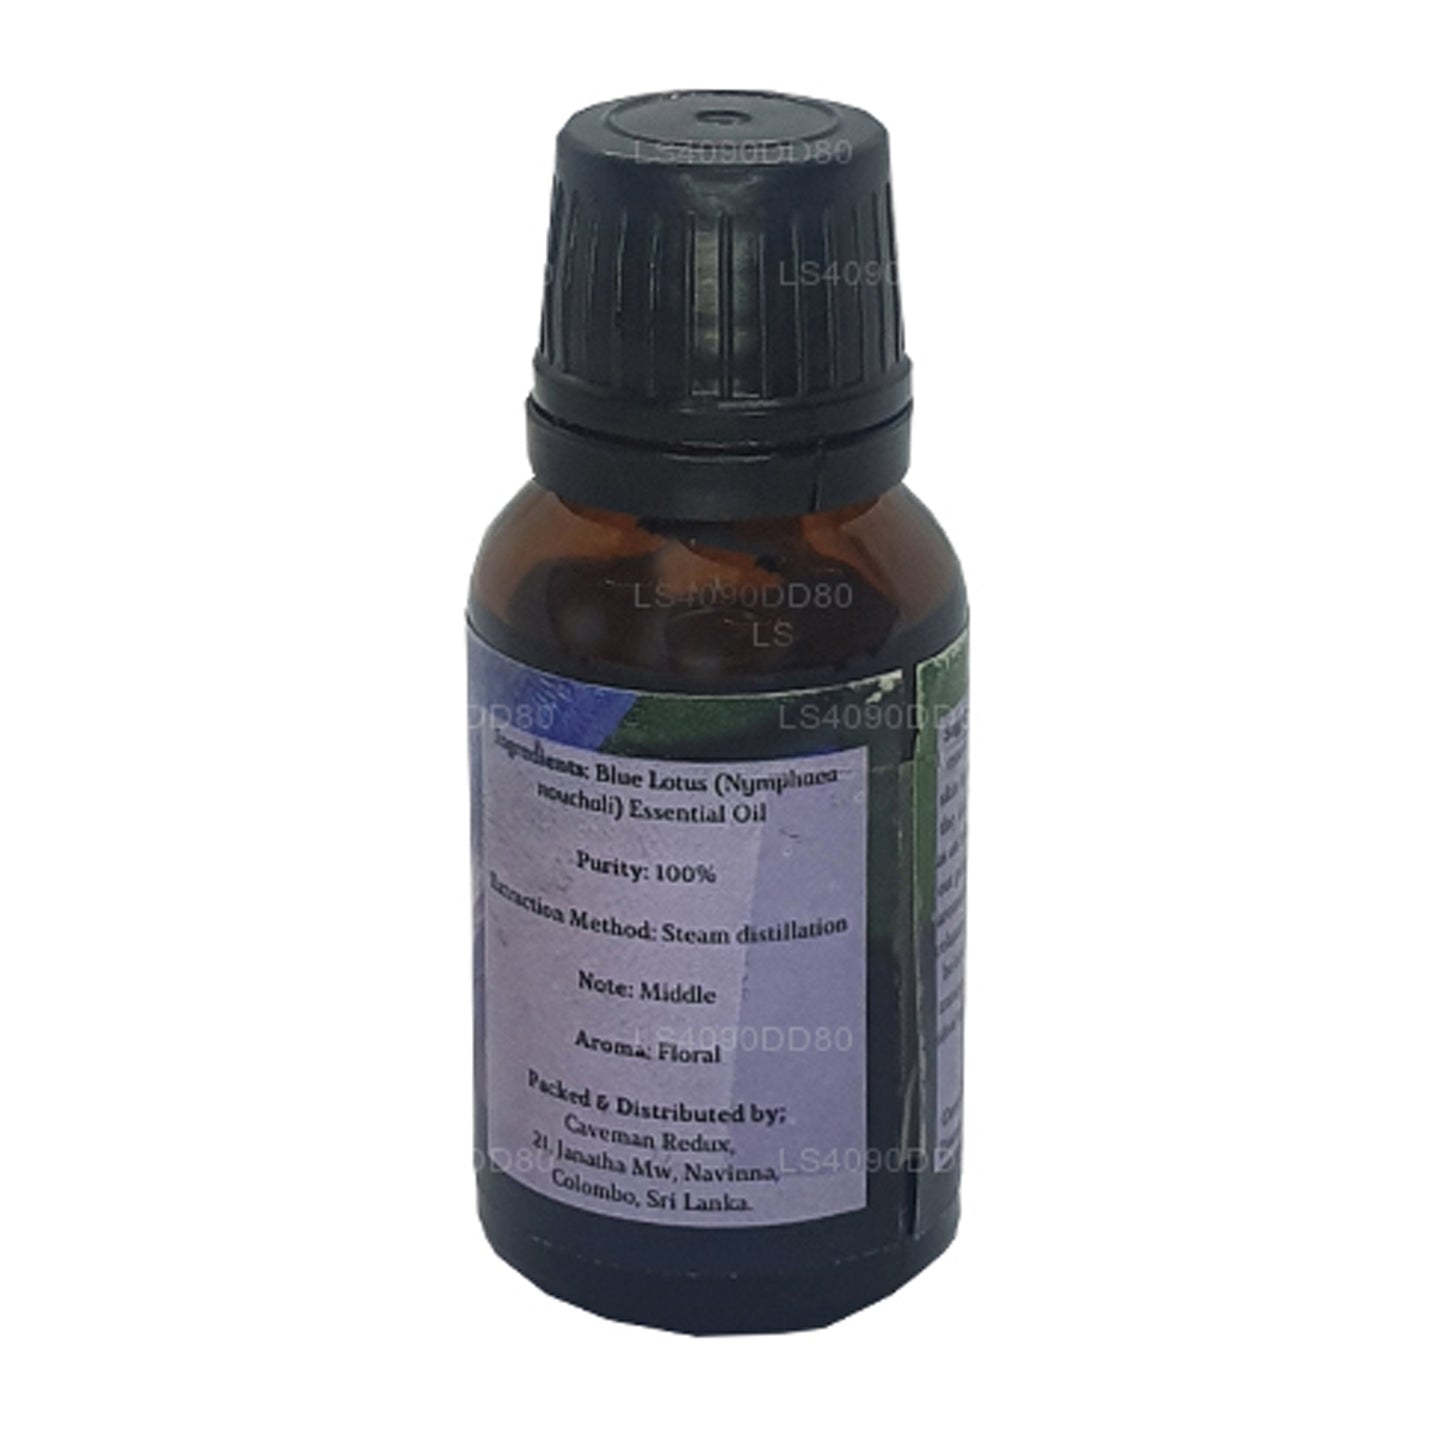 Lakpura Blue Lotus æterisk olie (absolut) (15 ml)